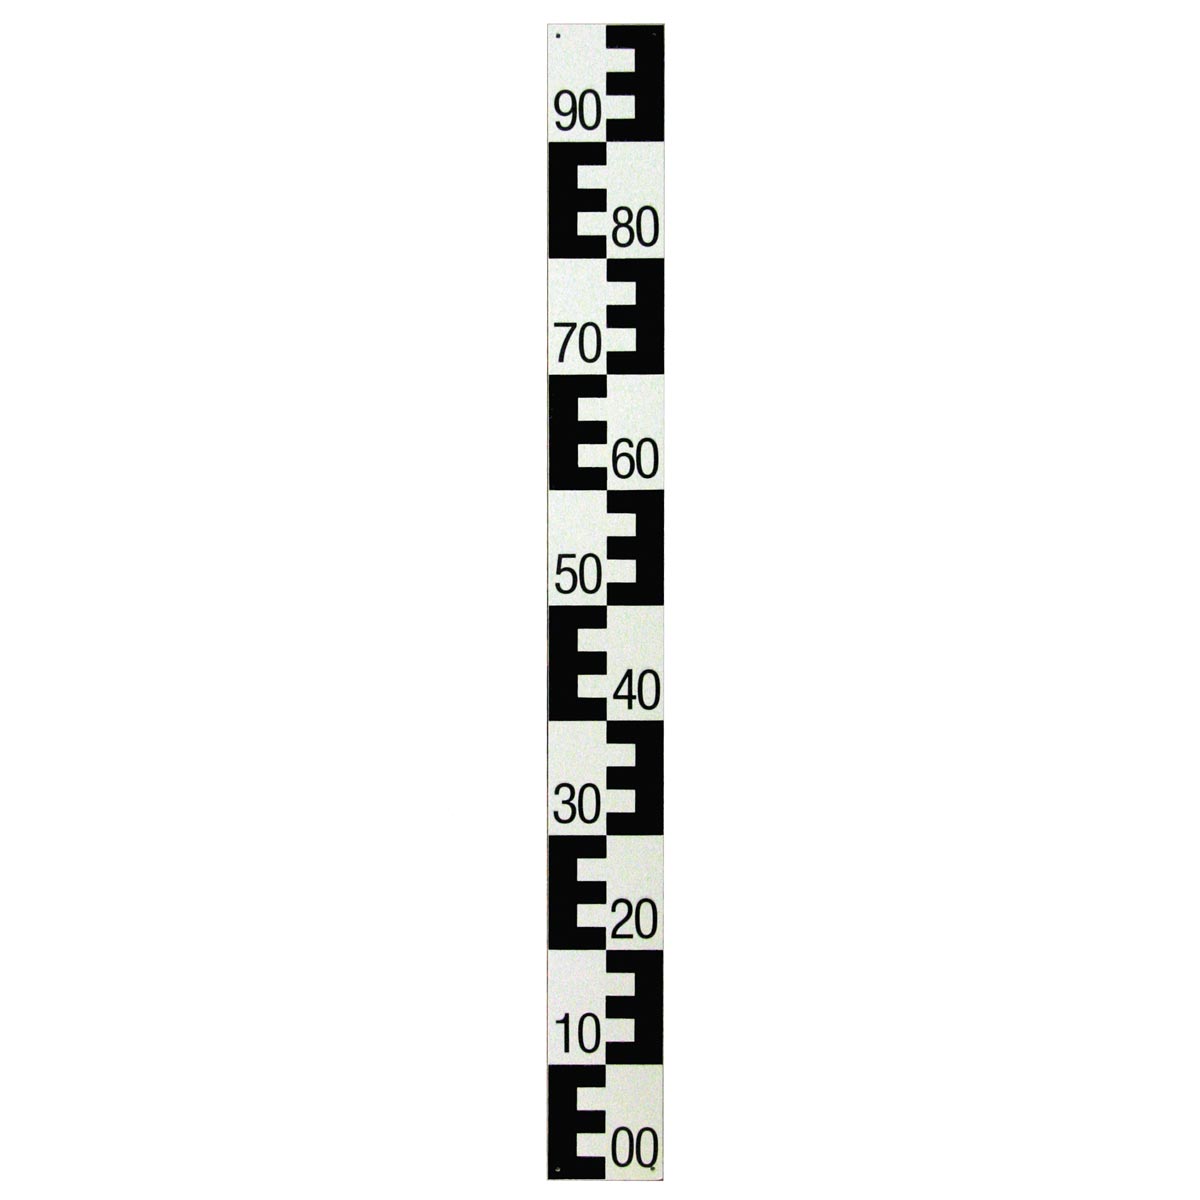 Pegellatte aus Hartkunststoff, 1 m schwarz oben 90 nach unten 00 absteigend, 10 cm breit